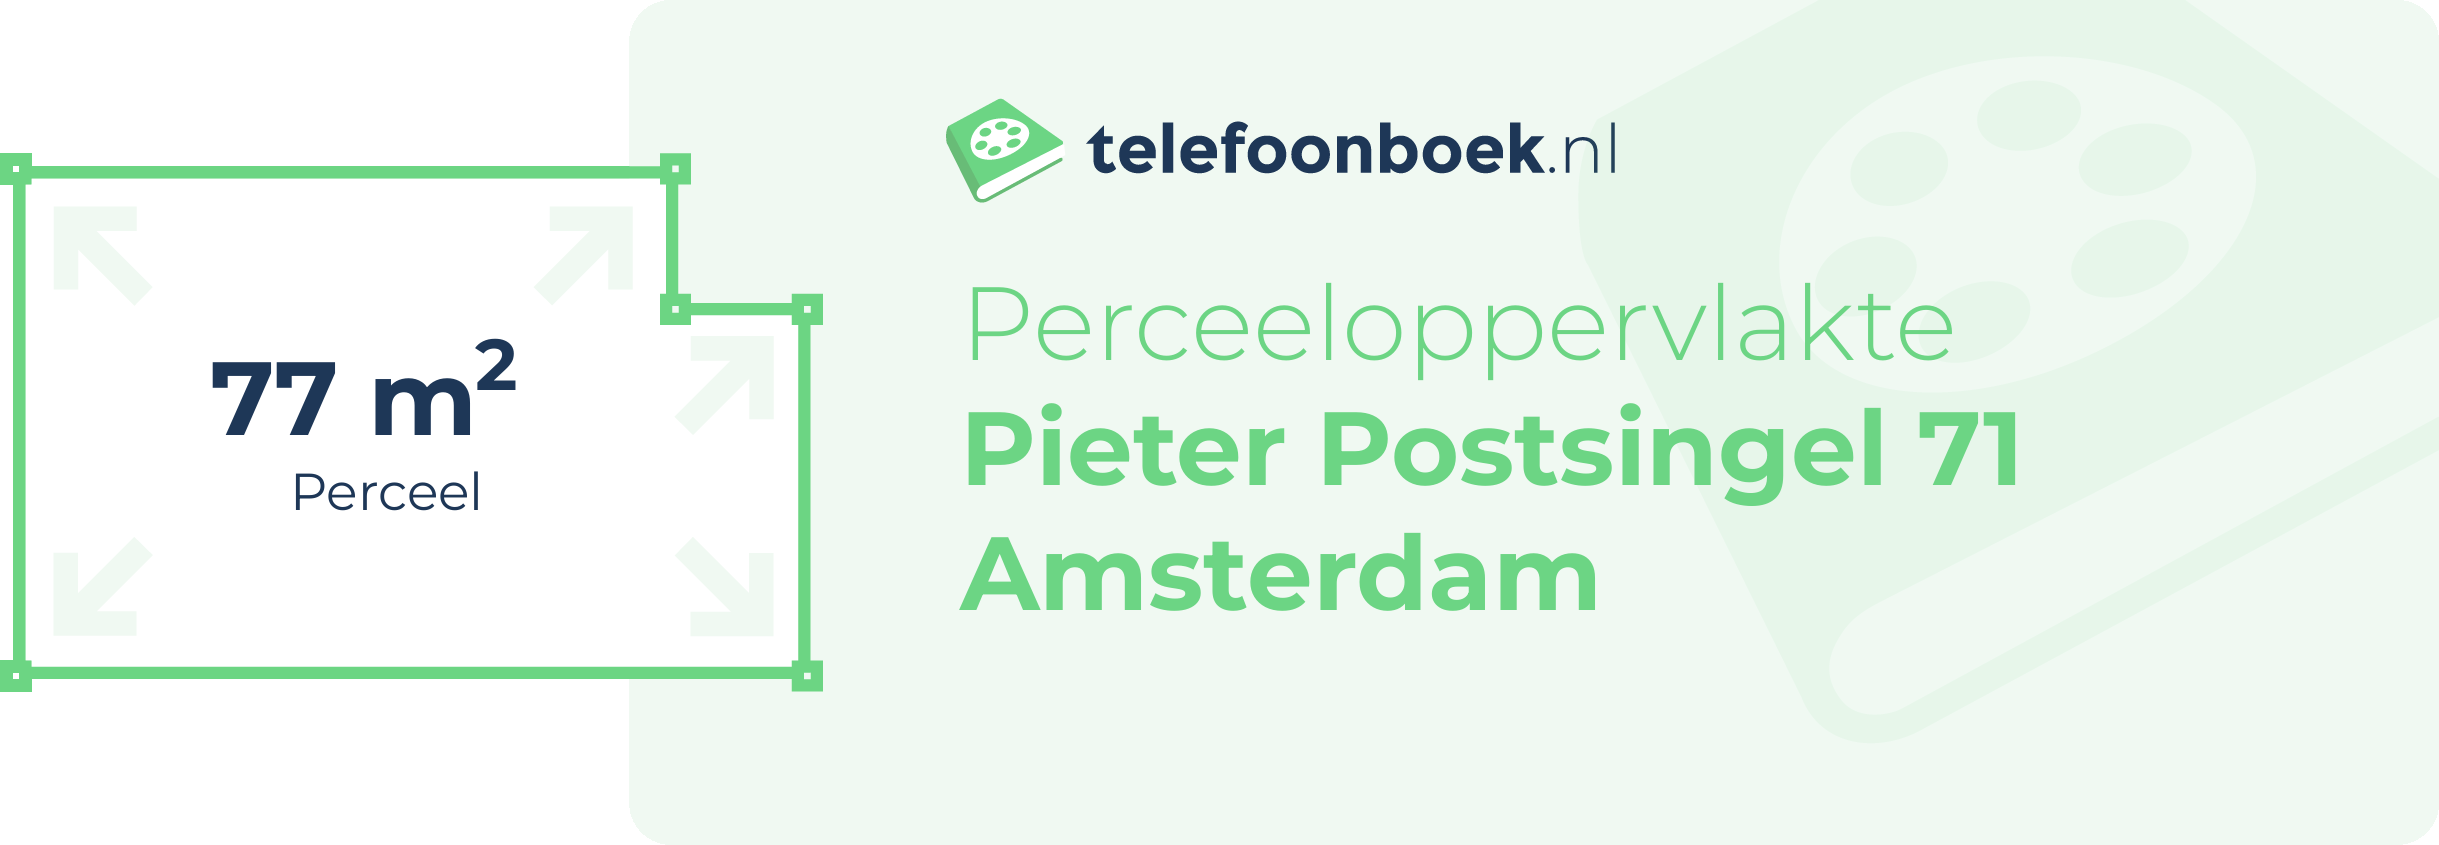 Perceeloppervlakte Pieter Postsingel 71 Amsterdam